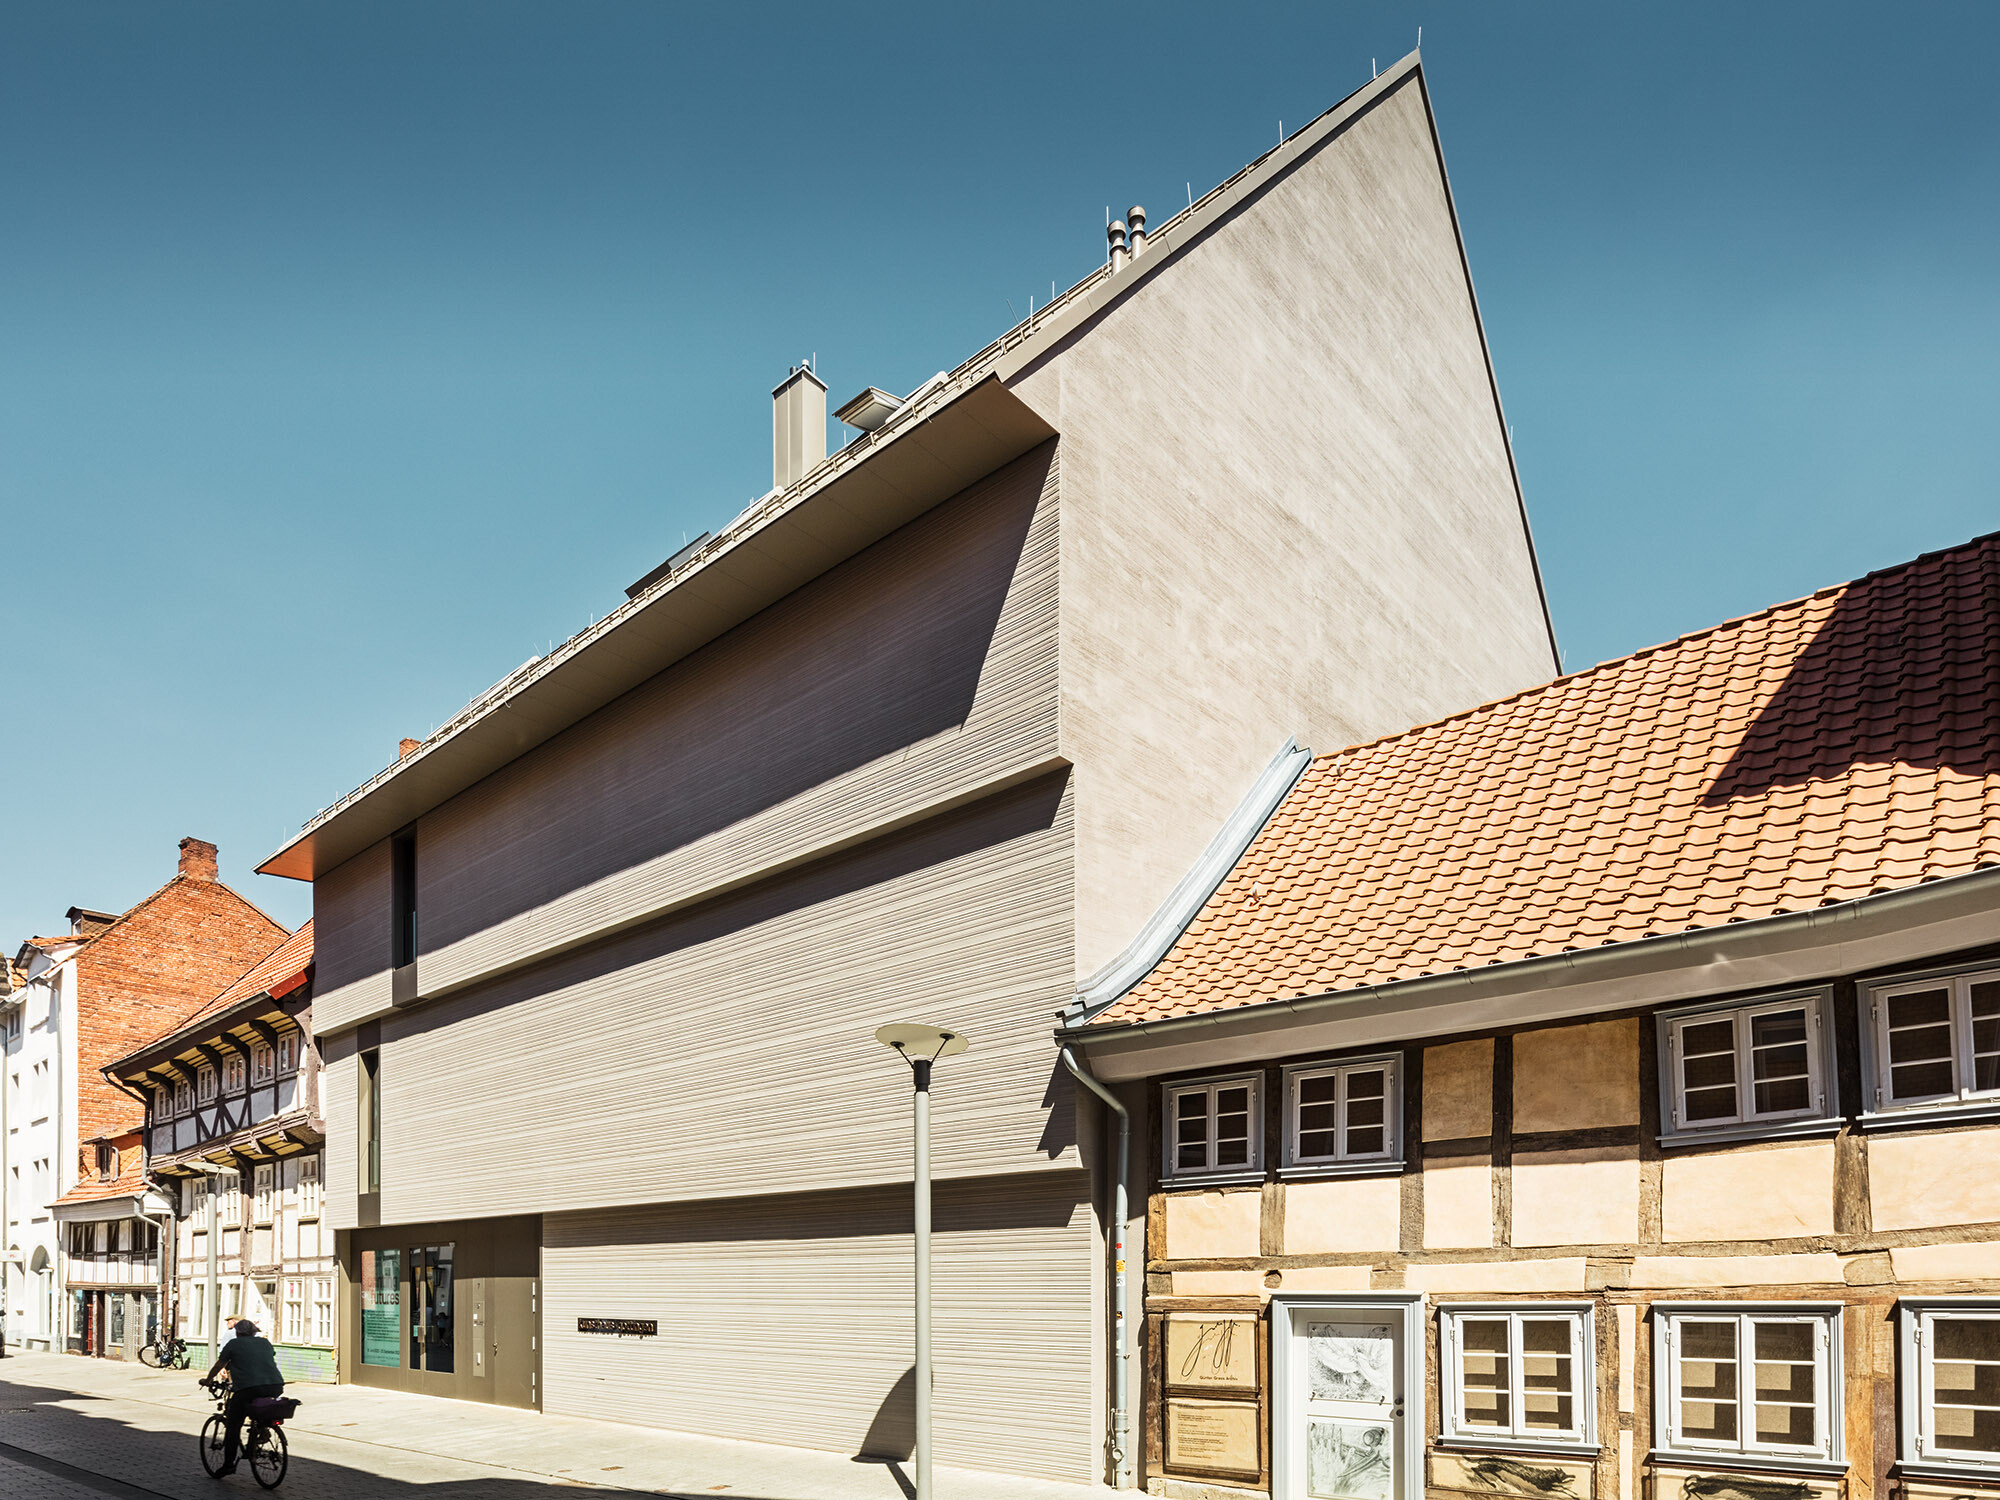 Le Kunsthaus vu de côté en perspective de grenouille, à côté des bâtiments historiques.